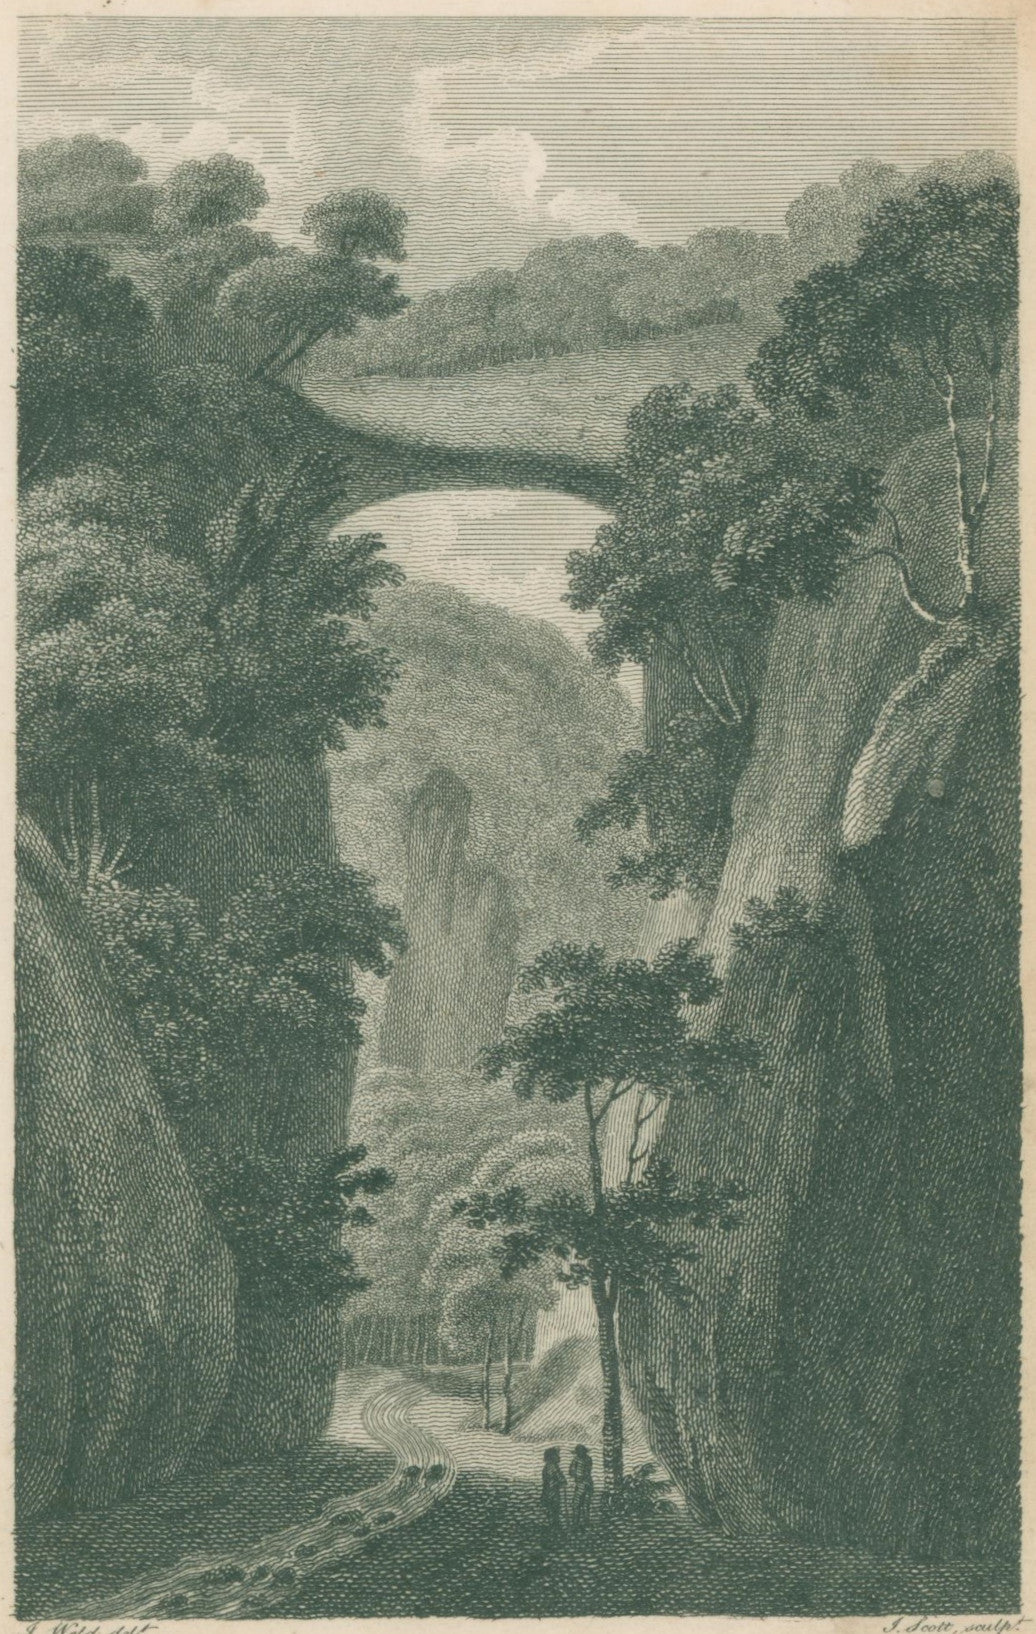 Weld, Isaac Jr. “View of the Rock Bridge”  [1800]